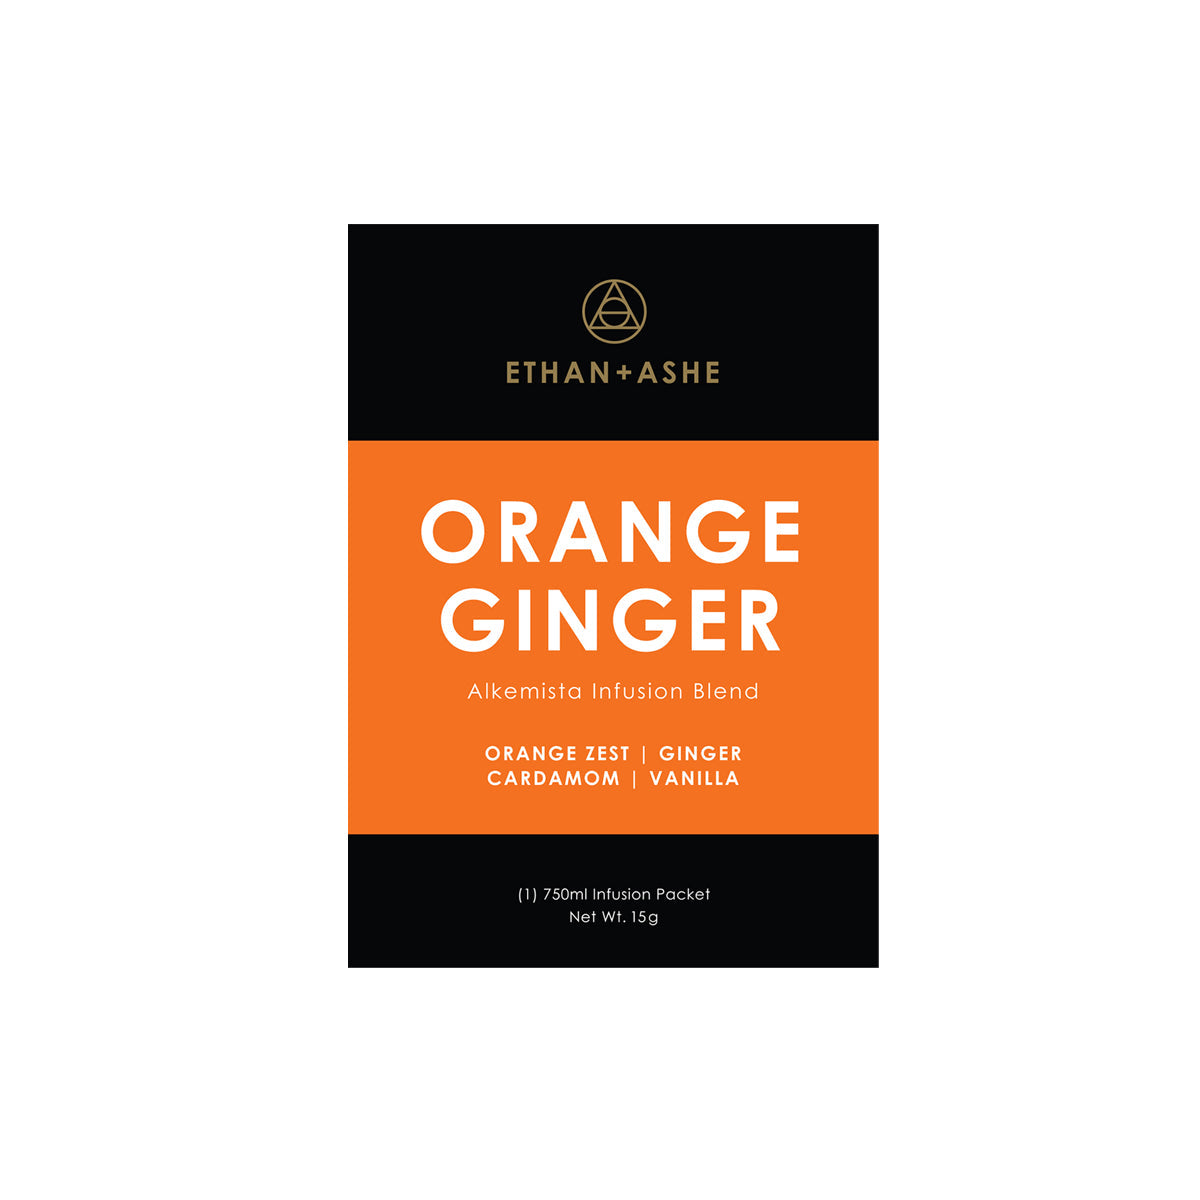 Alkemista Infusion - Orange Ginger by Ethan+Ashe